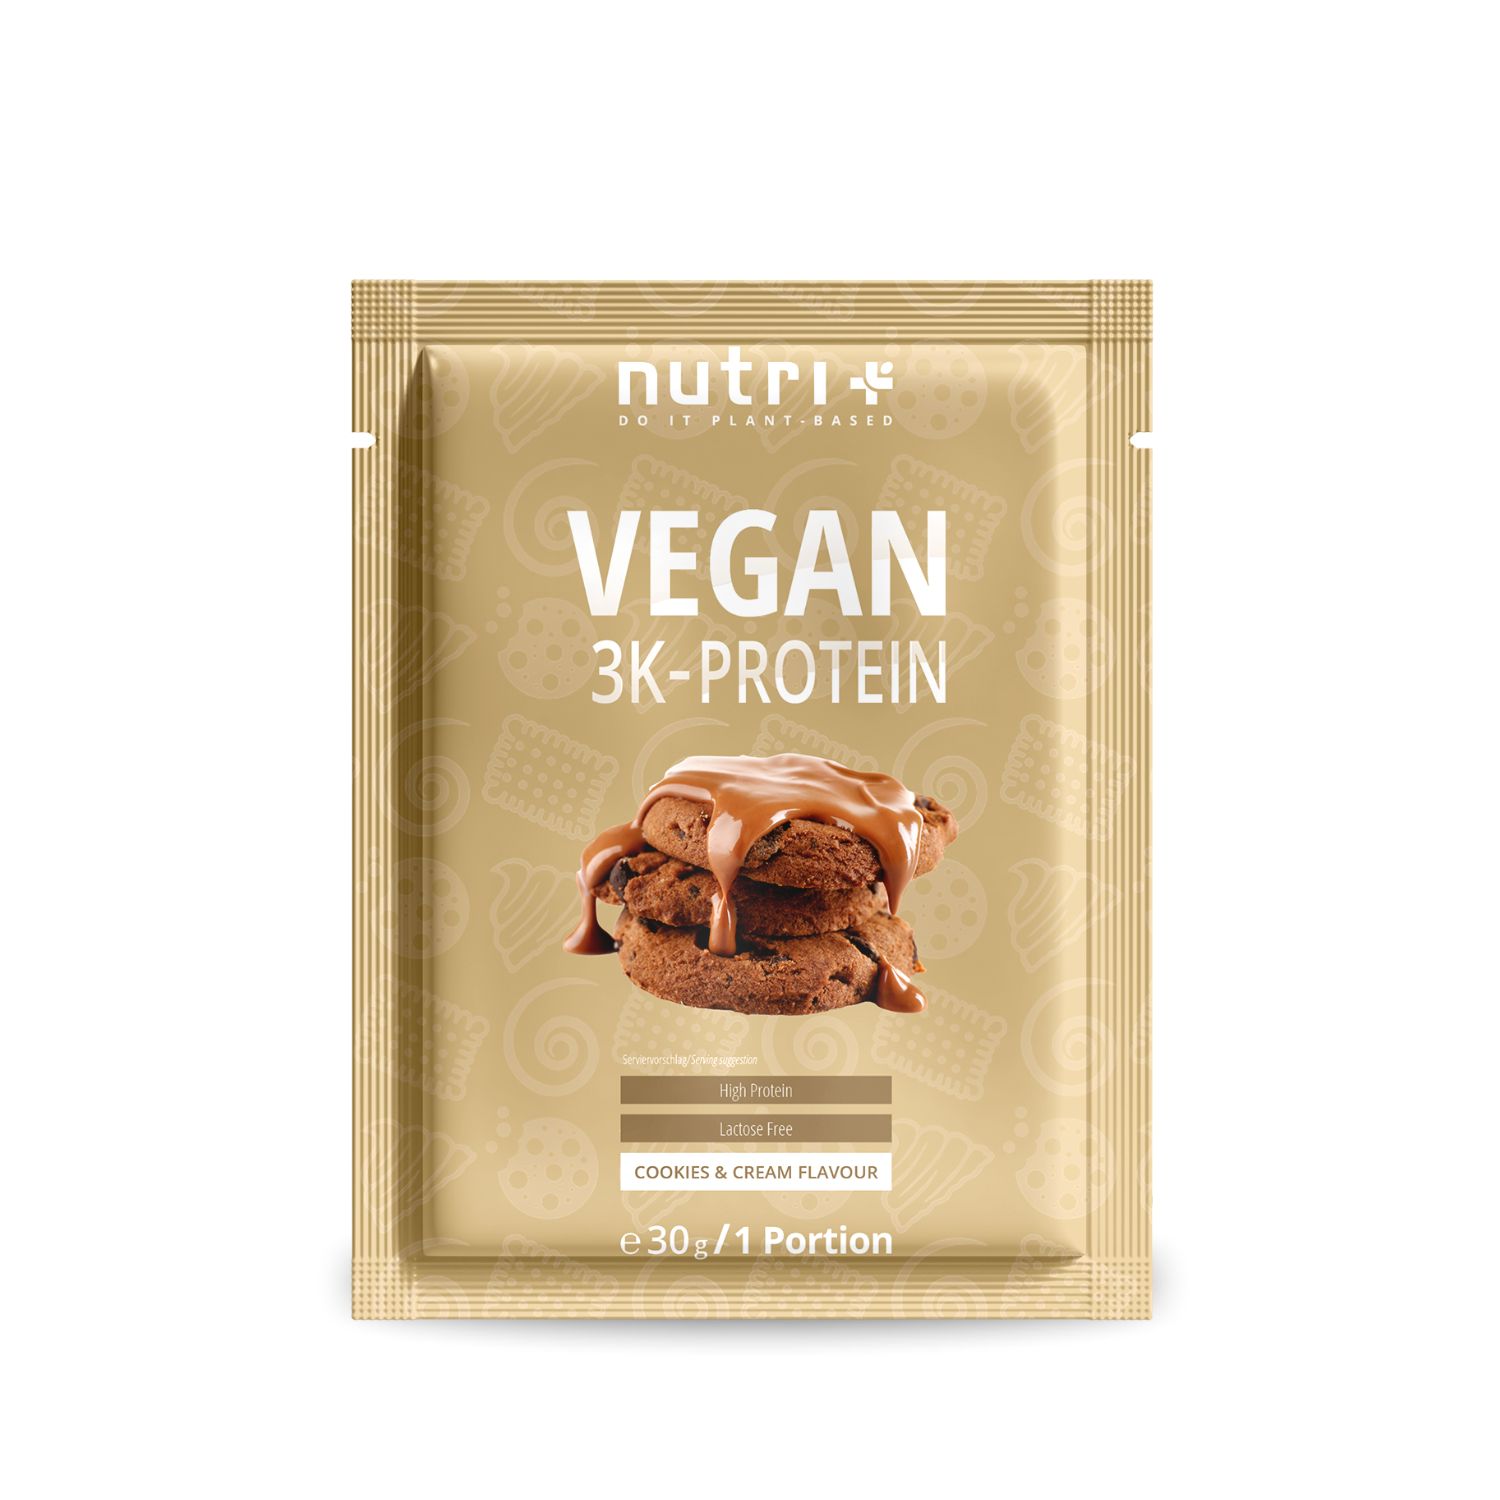 Vegan 3K Protein Powder Samples